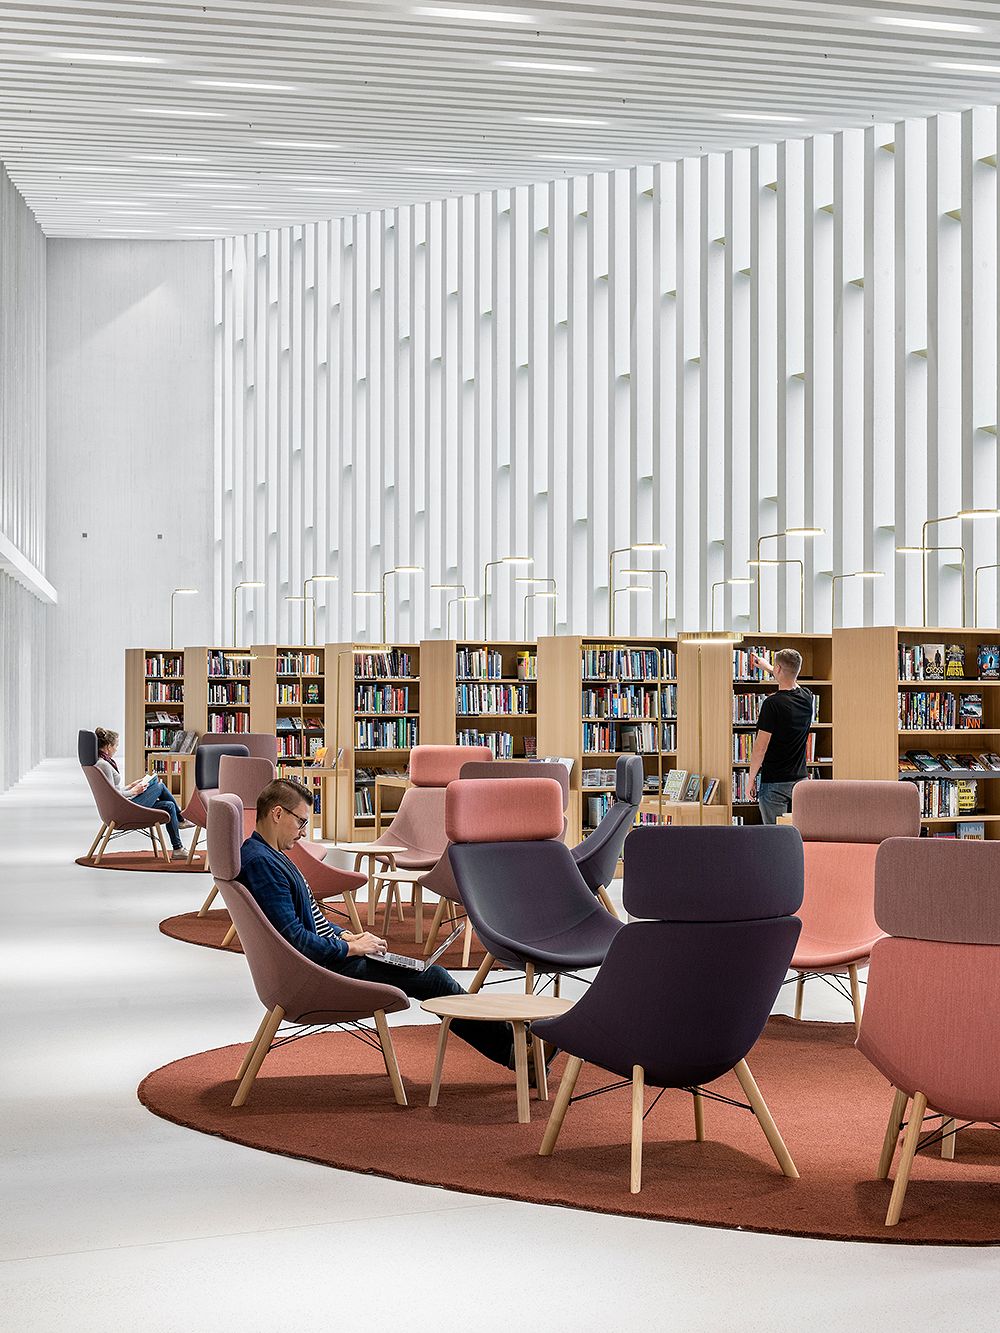 Fyyri Library in Kirkkonummi, Finland